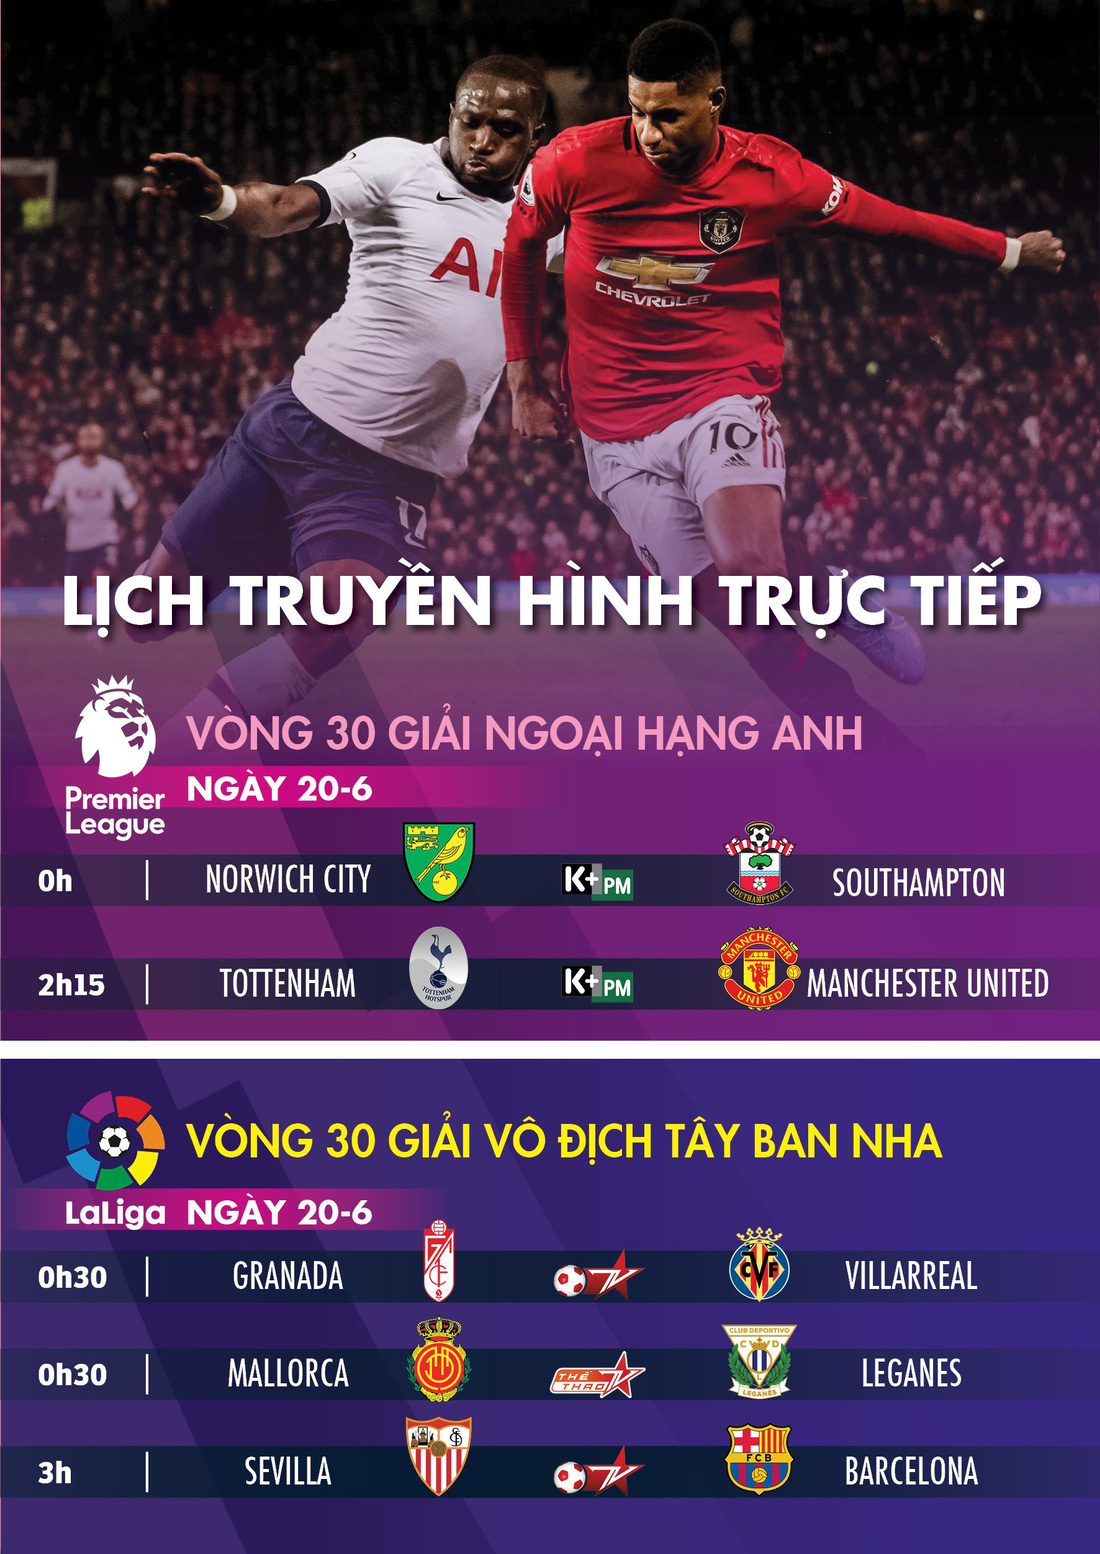 Lịch trực tiếp bóng đá châu Âu 20-6: Đại chiến Tottenham - Manchester United - Ảnh 1.